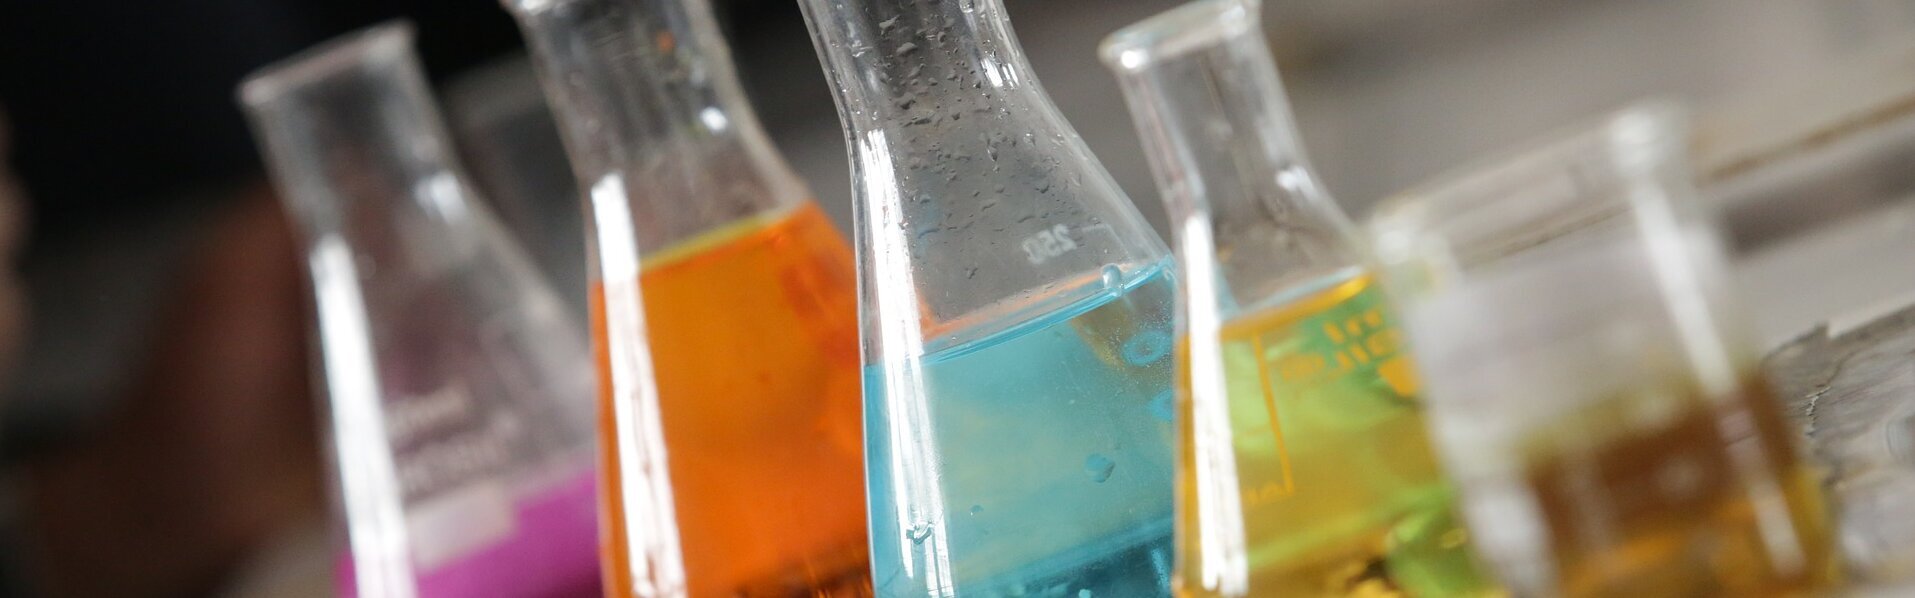 Das Bild zeigt verschiedene Gefäße mit Chemikalien in einem Labor.